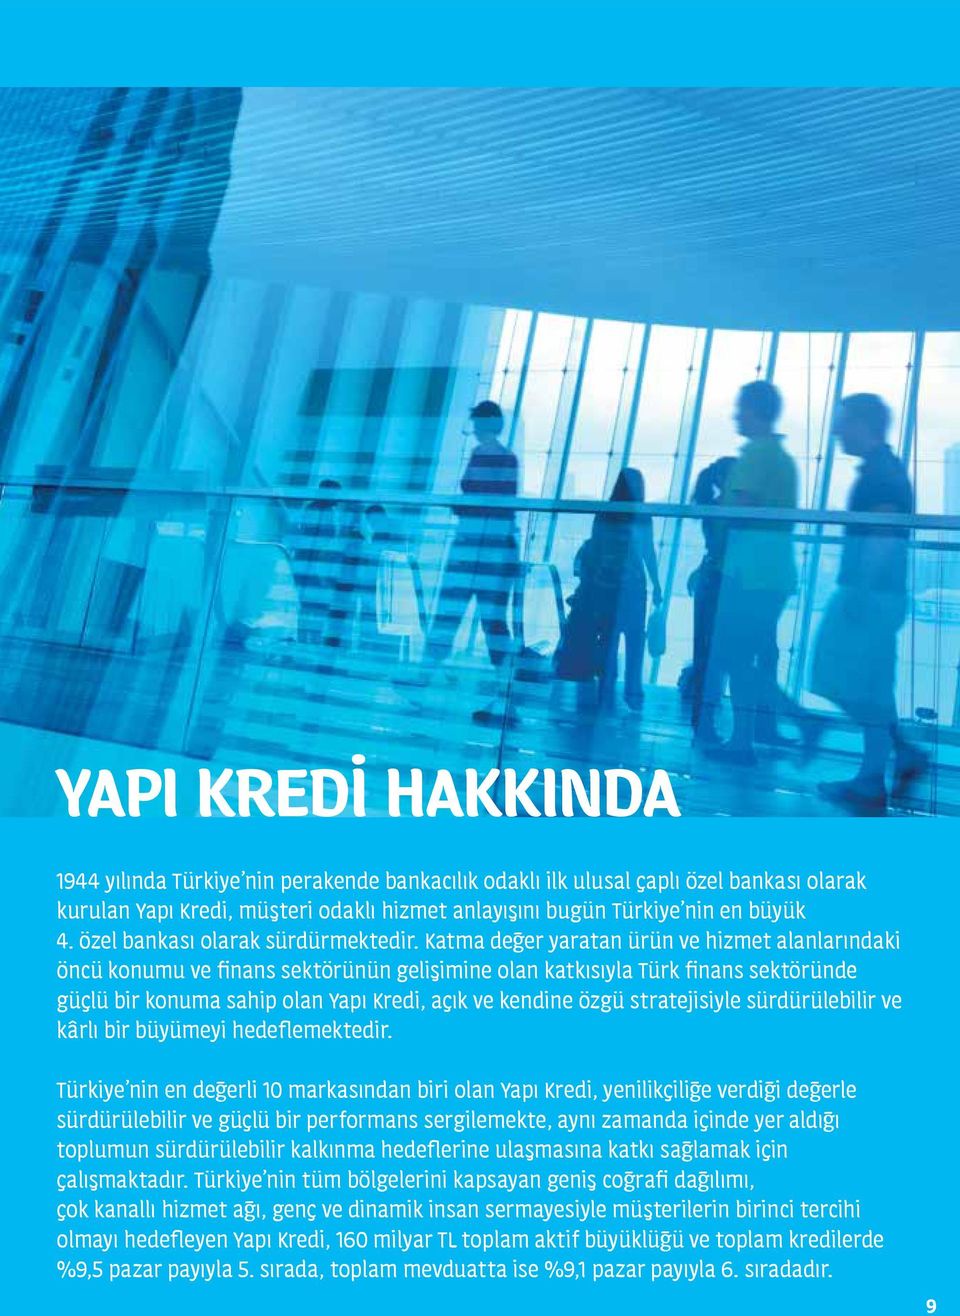 Katma değer yaratan ürün ve hizmet alanlarındaki öncü konumu ve finans sektörünün gelişimine olan katkısıyla Türk finans sektöründe güçlü bir konuma sahip olan Yapı Kredi, açık ve kendine özgü